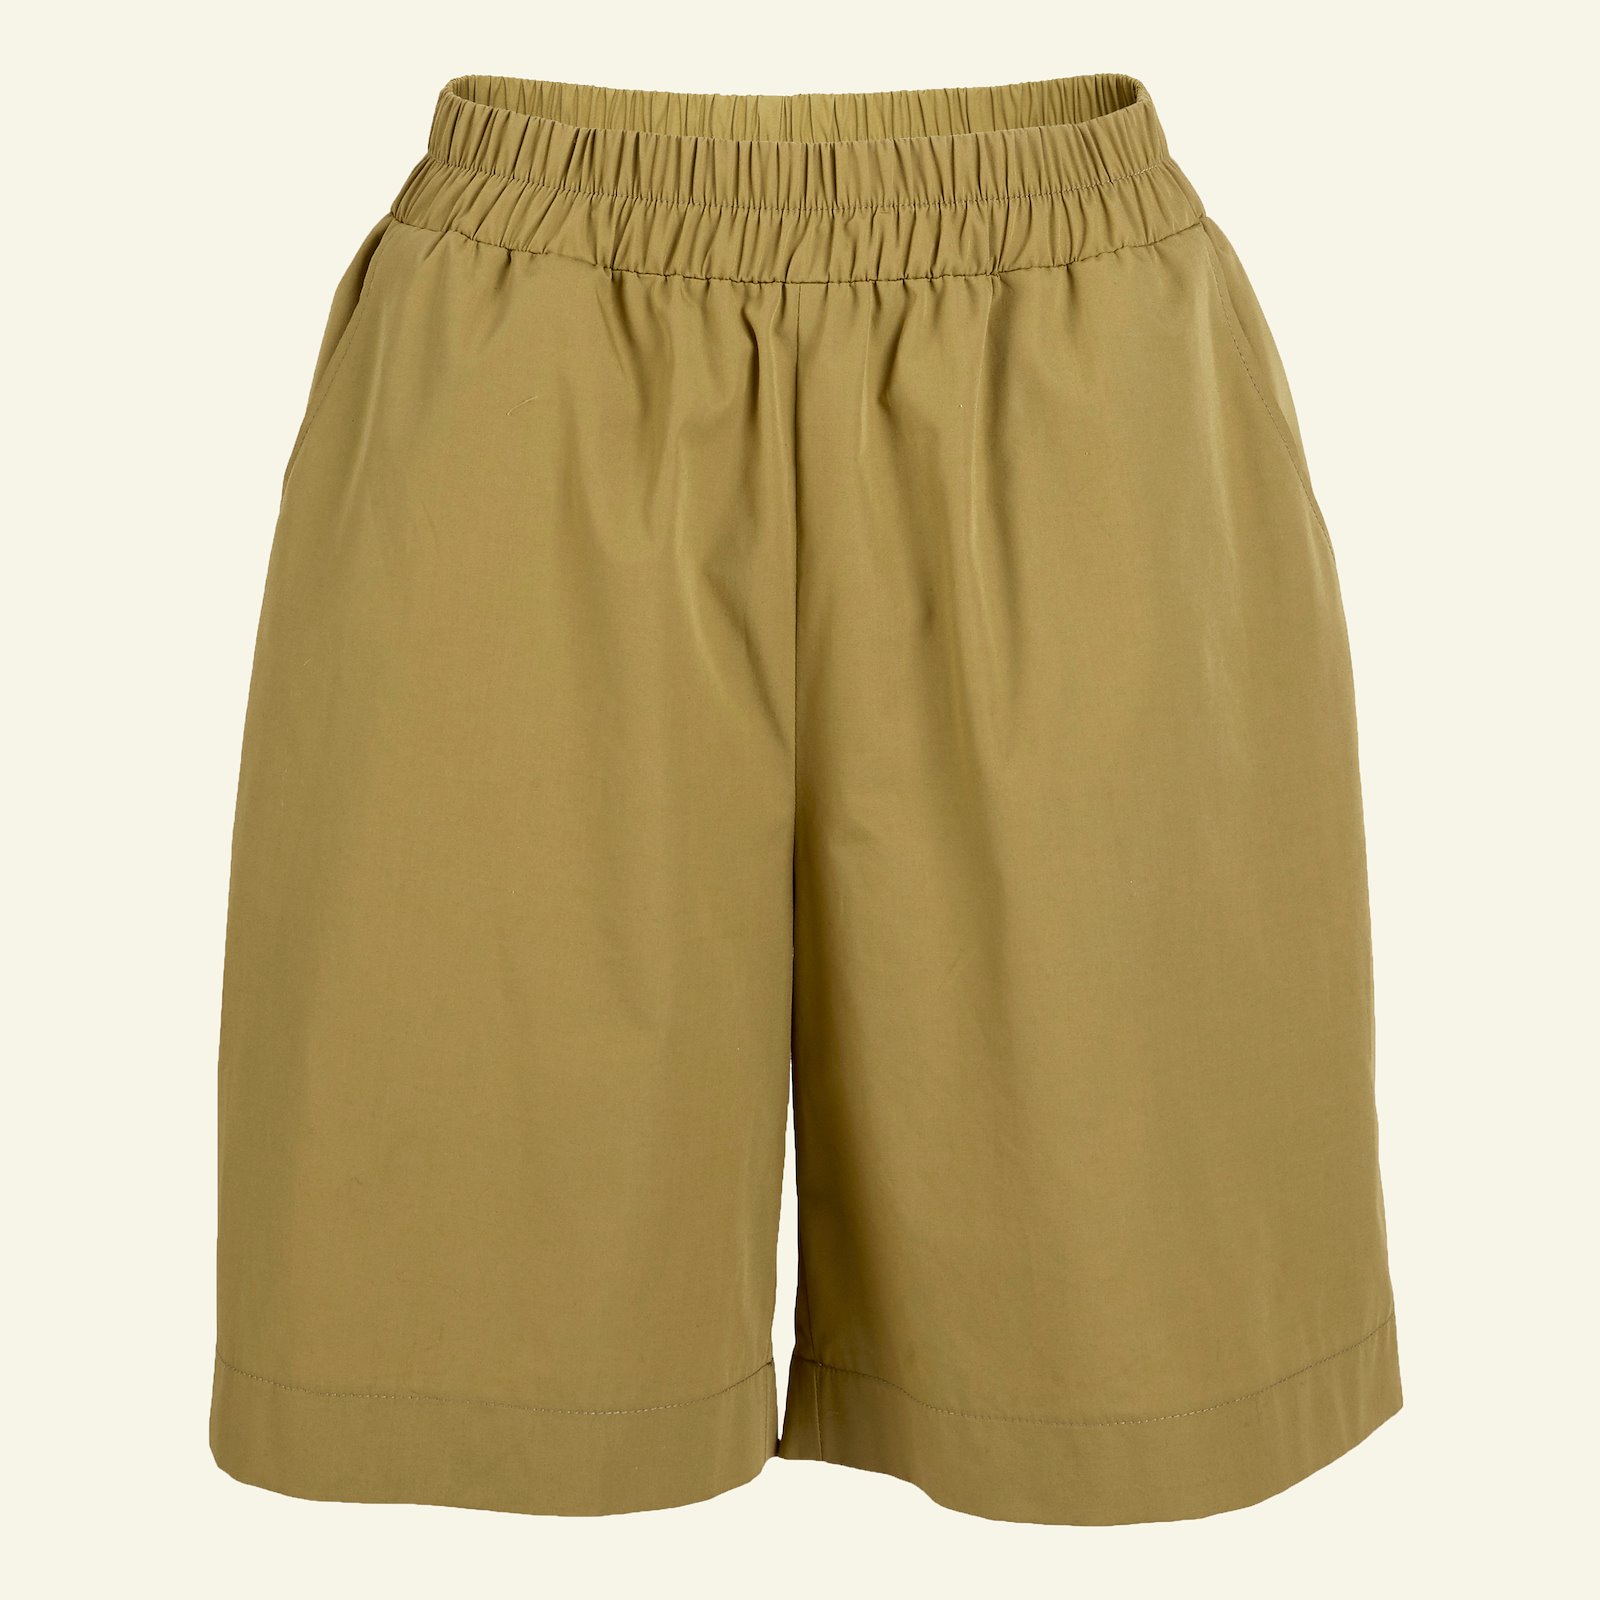 Bukse/shorts med vidde og lommer, 34 p20051_501926_sskit